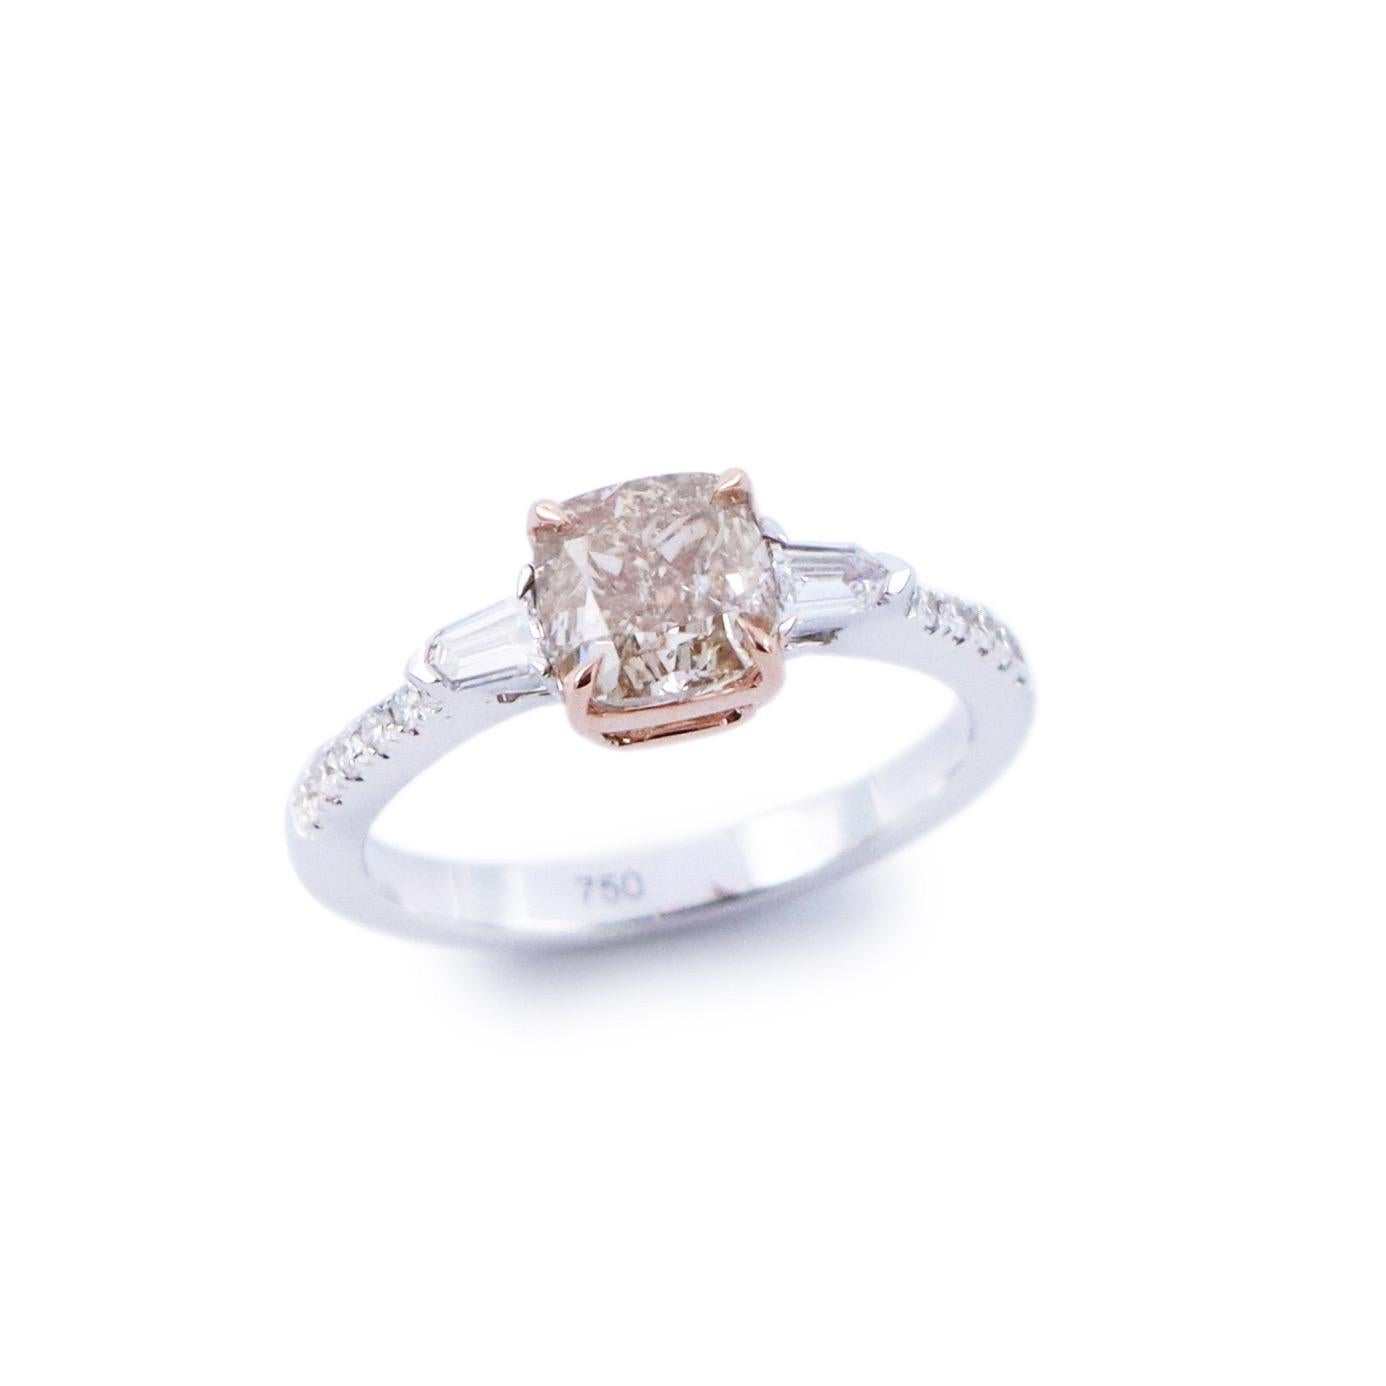 6 carat pink diamond ring